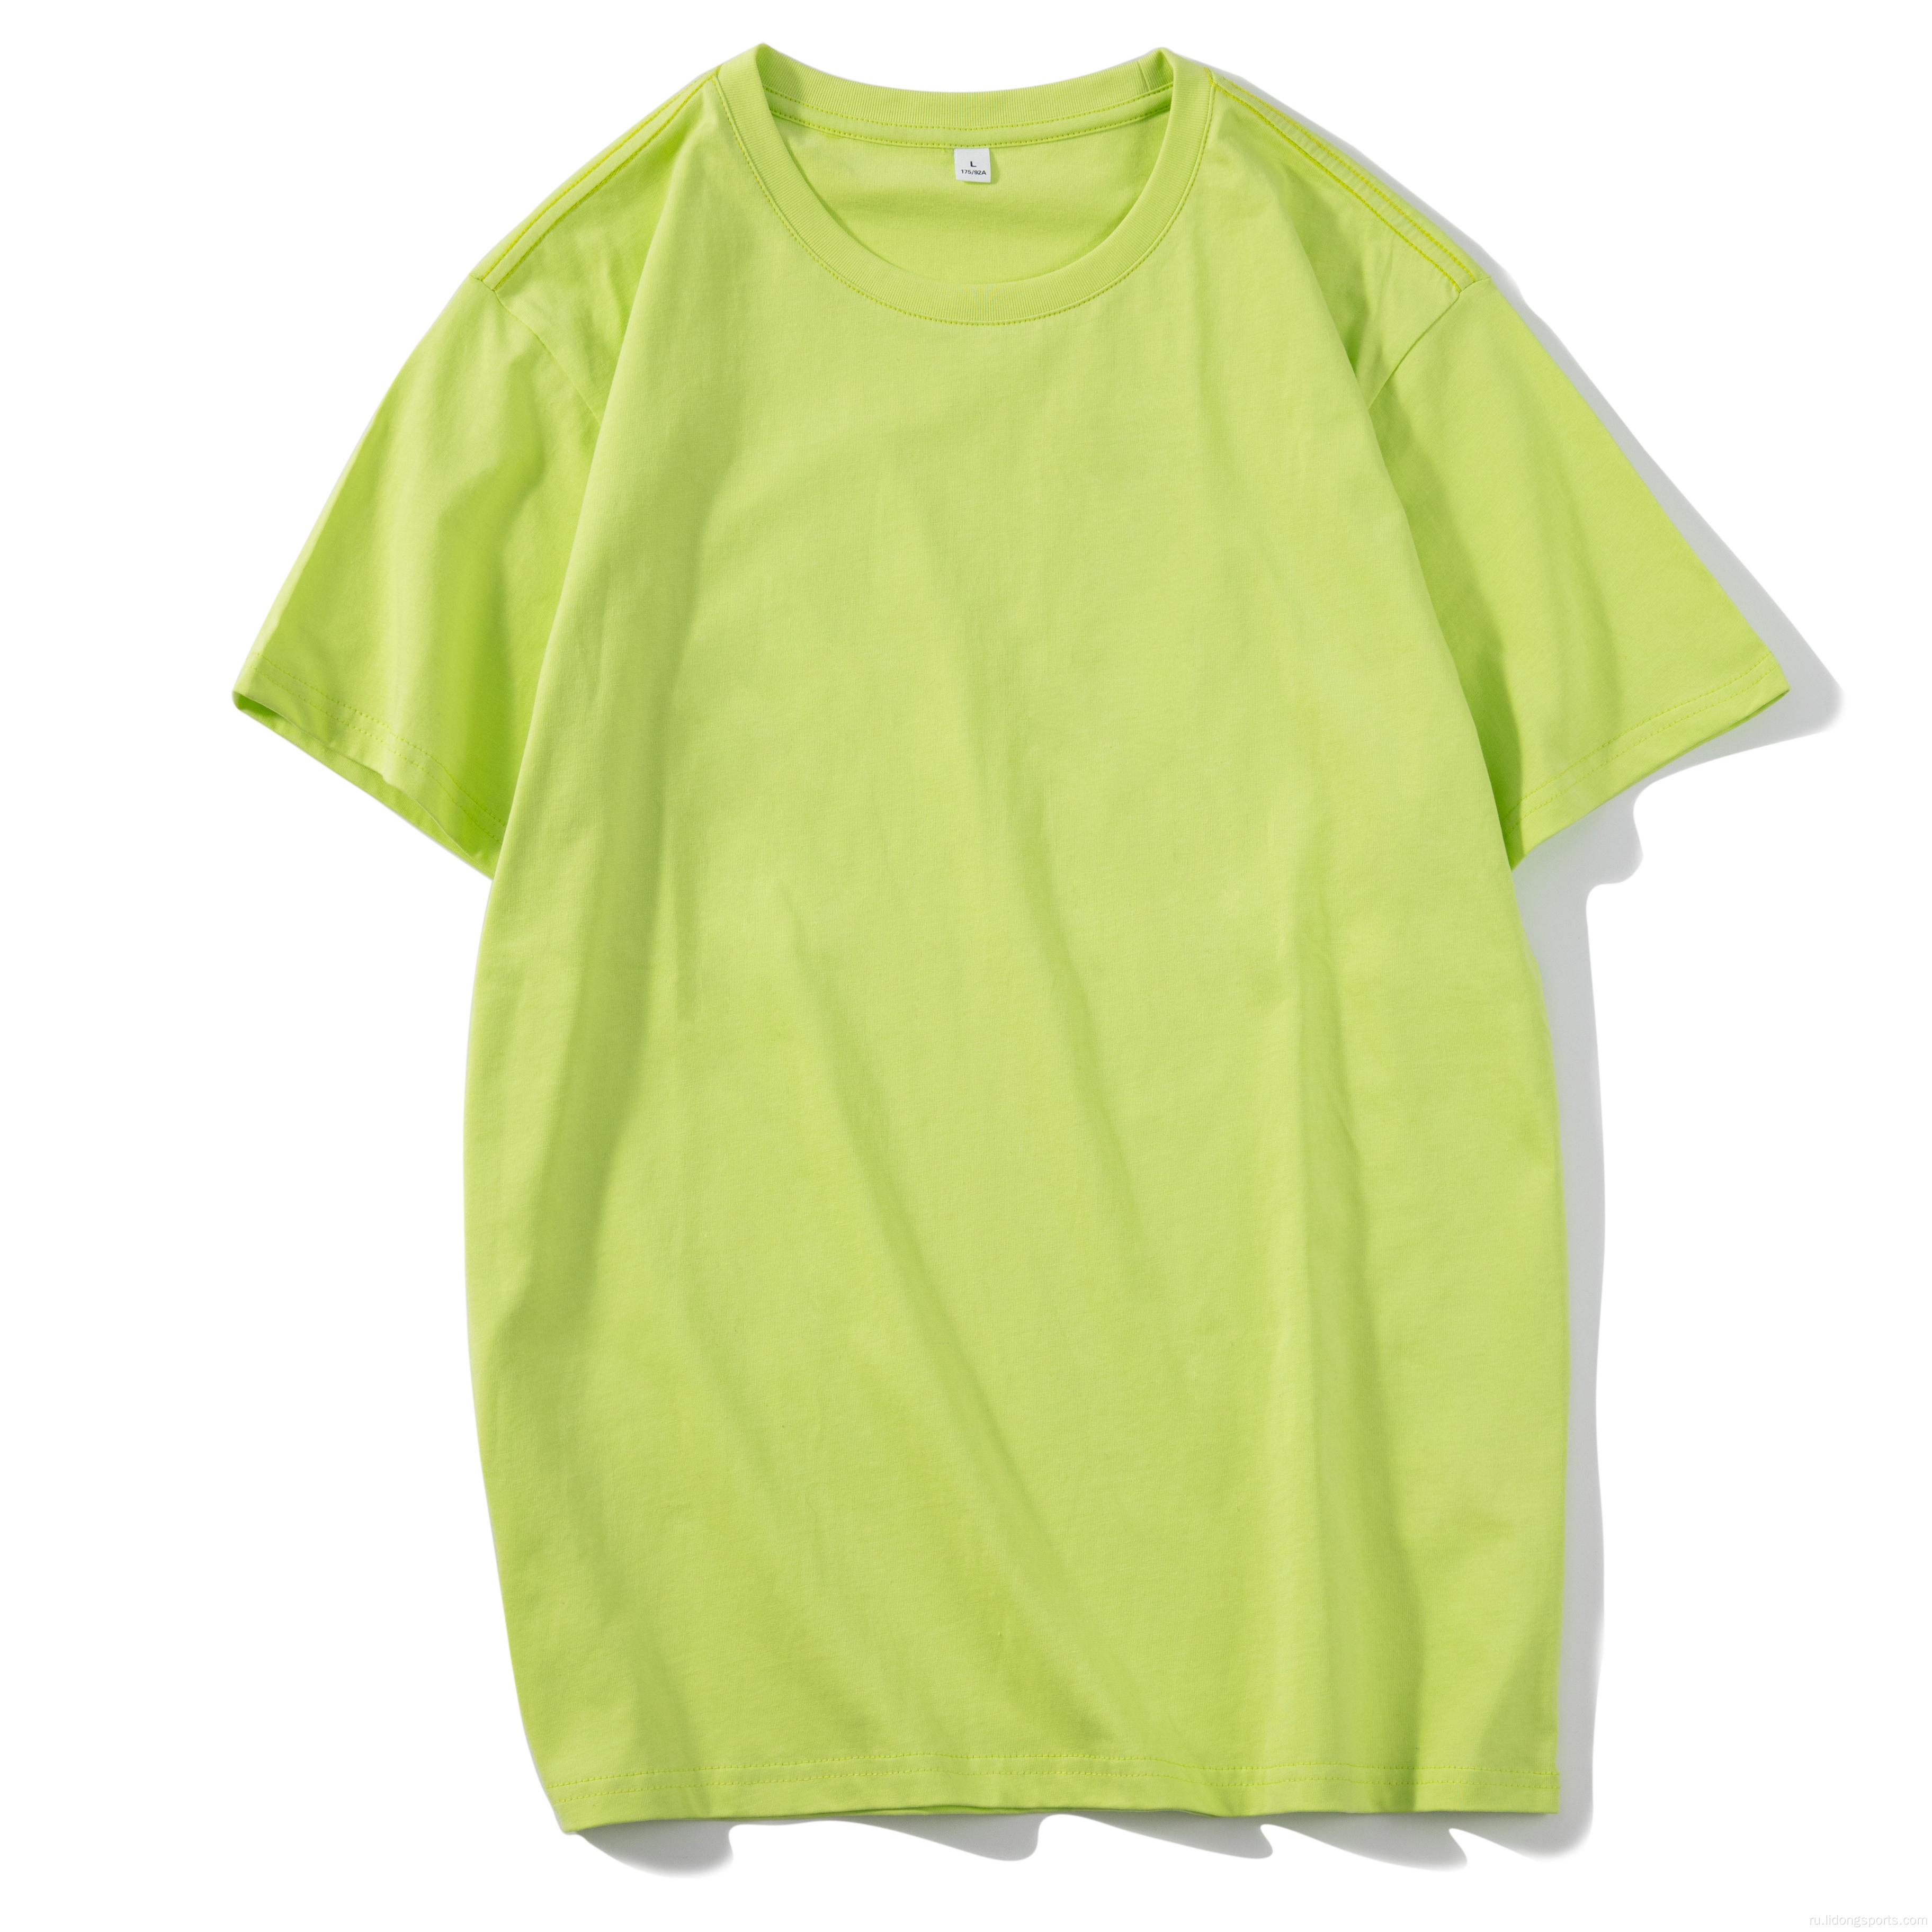 Мужская футболка Unisex Plain 100% хлопок негабаритная футболка